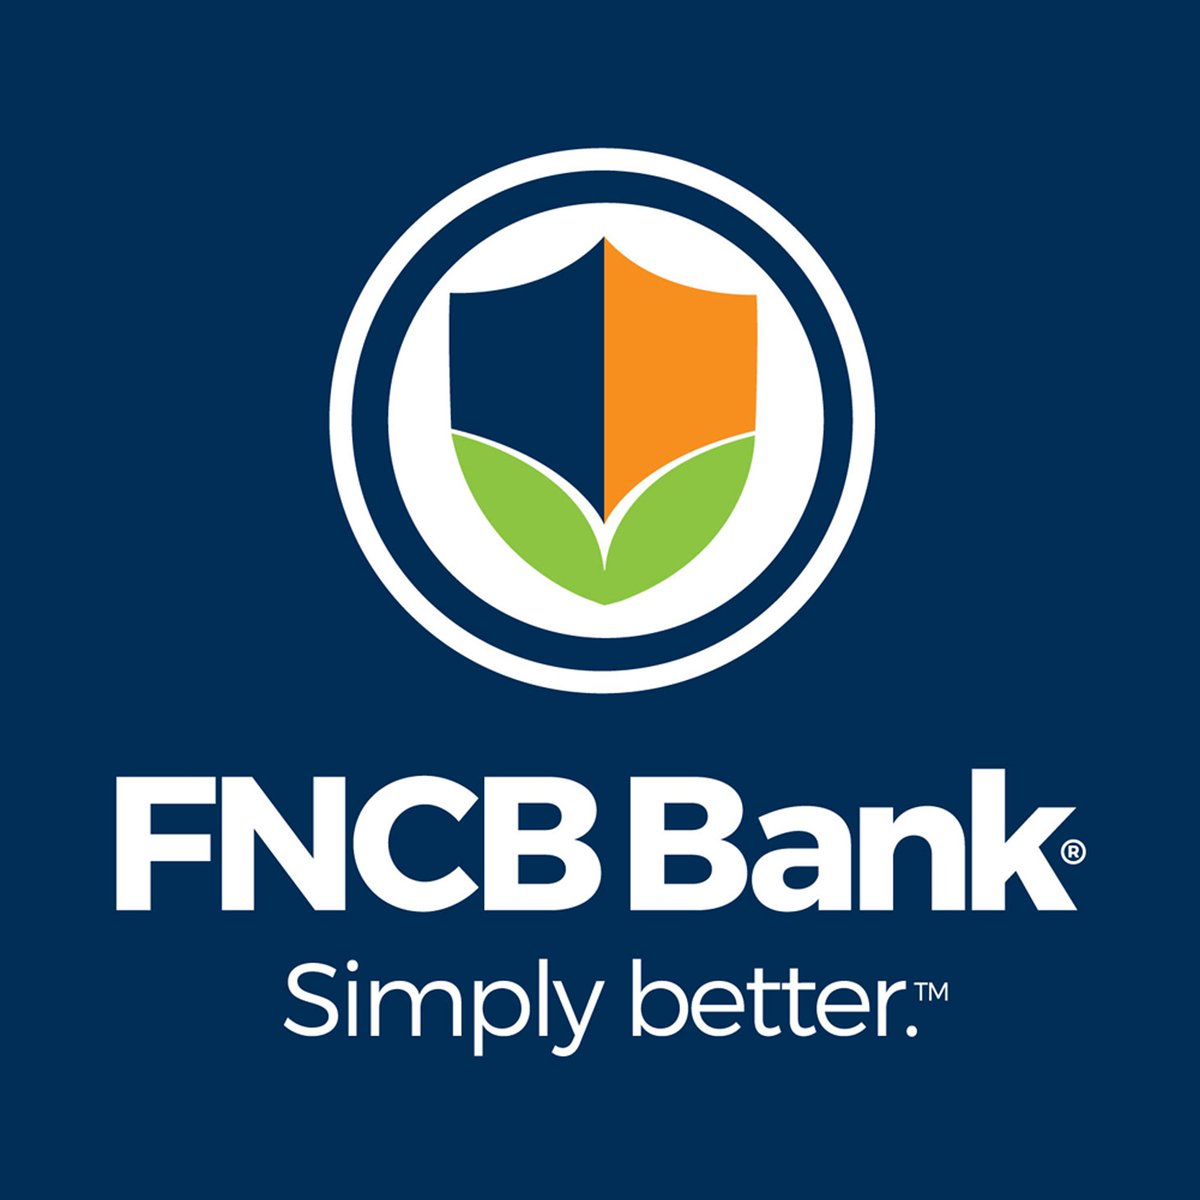 FNCB Bancorp Inc.